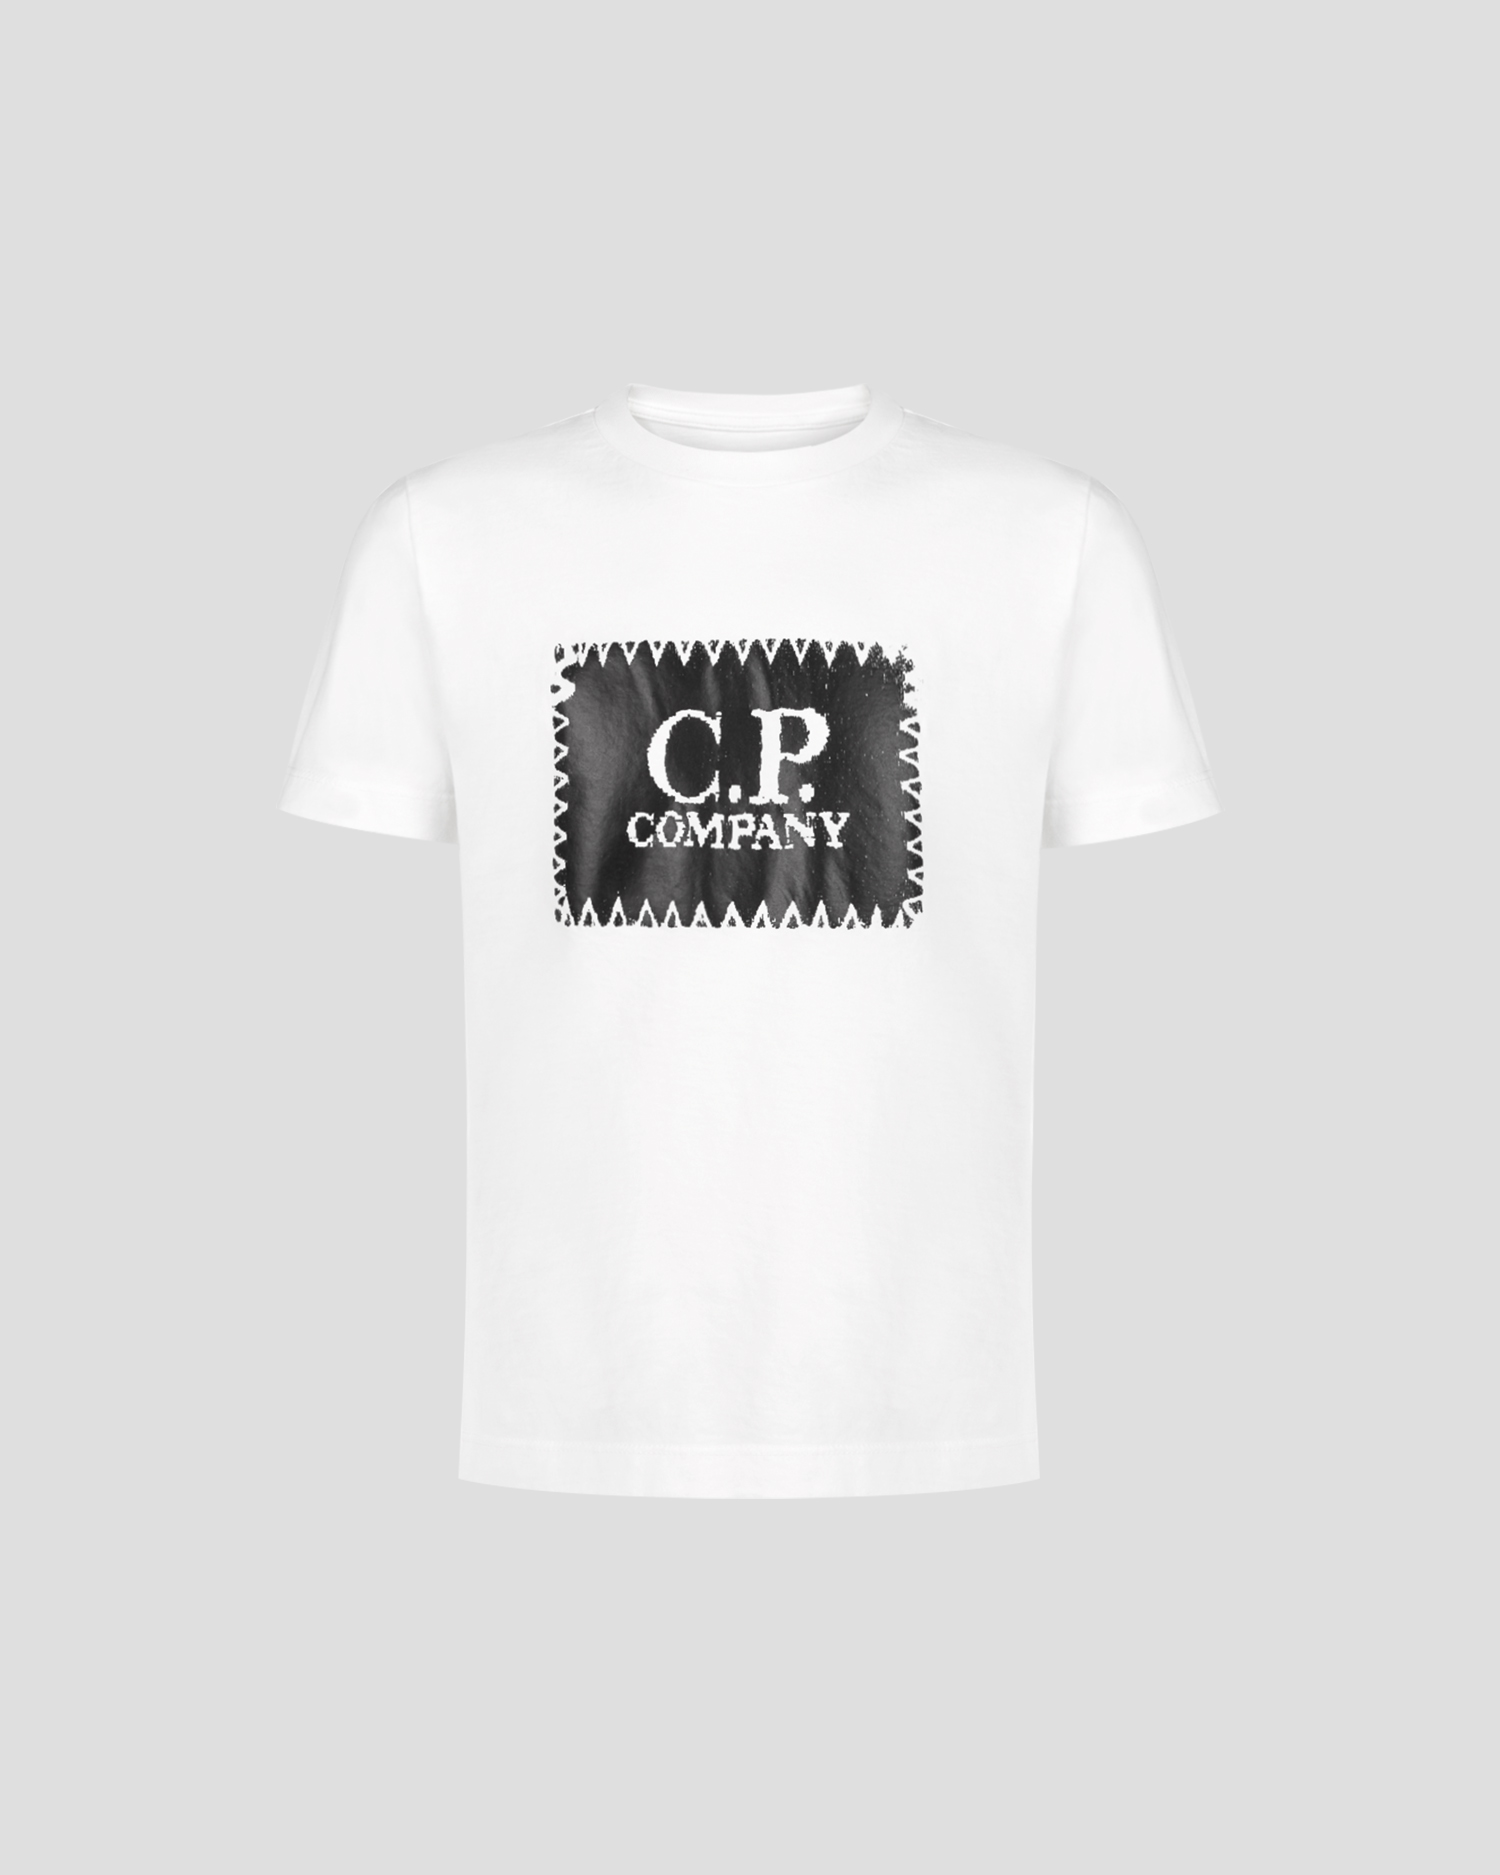 C.P. COMPANY シーピーカンパニー シャツ トップス メンズ Shirts